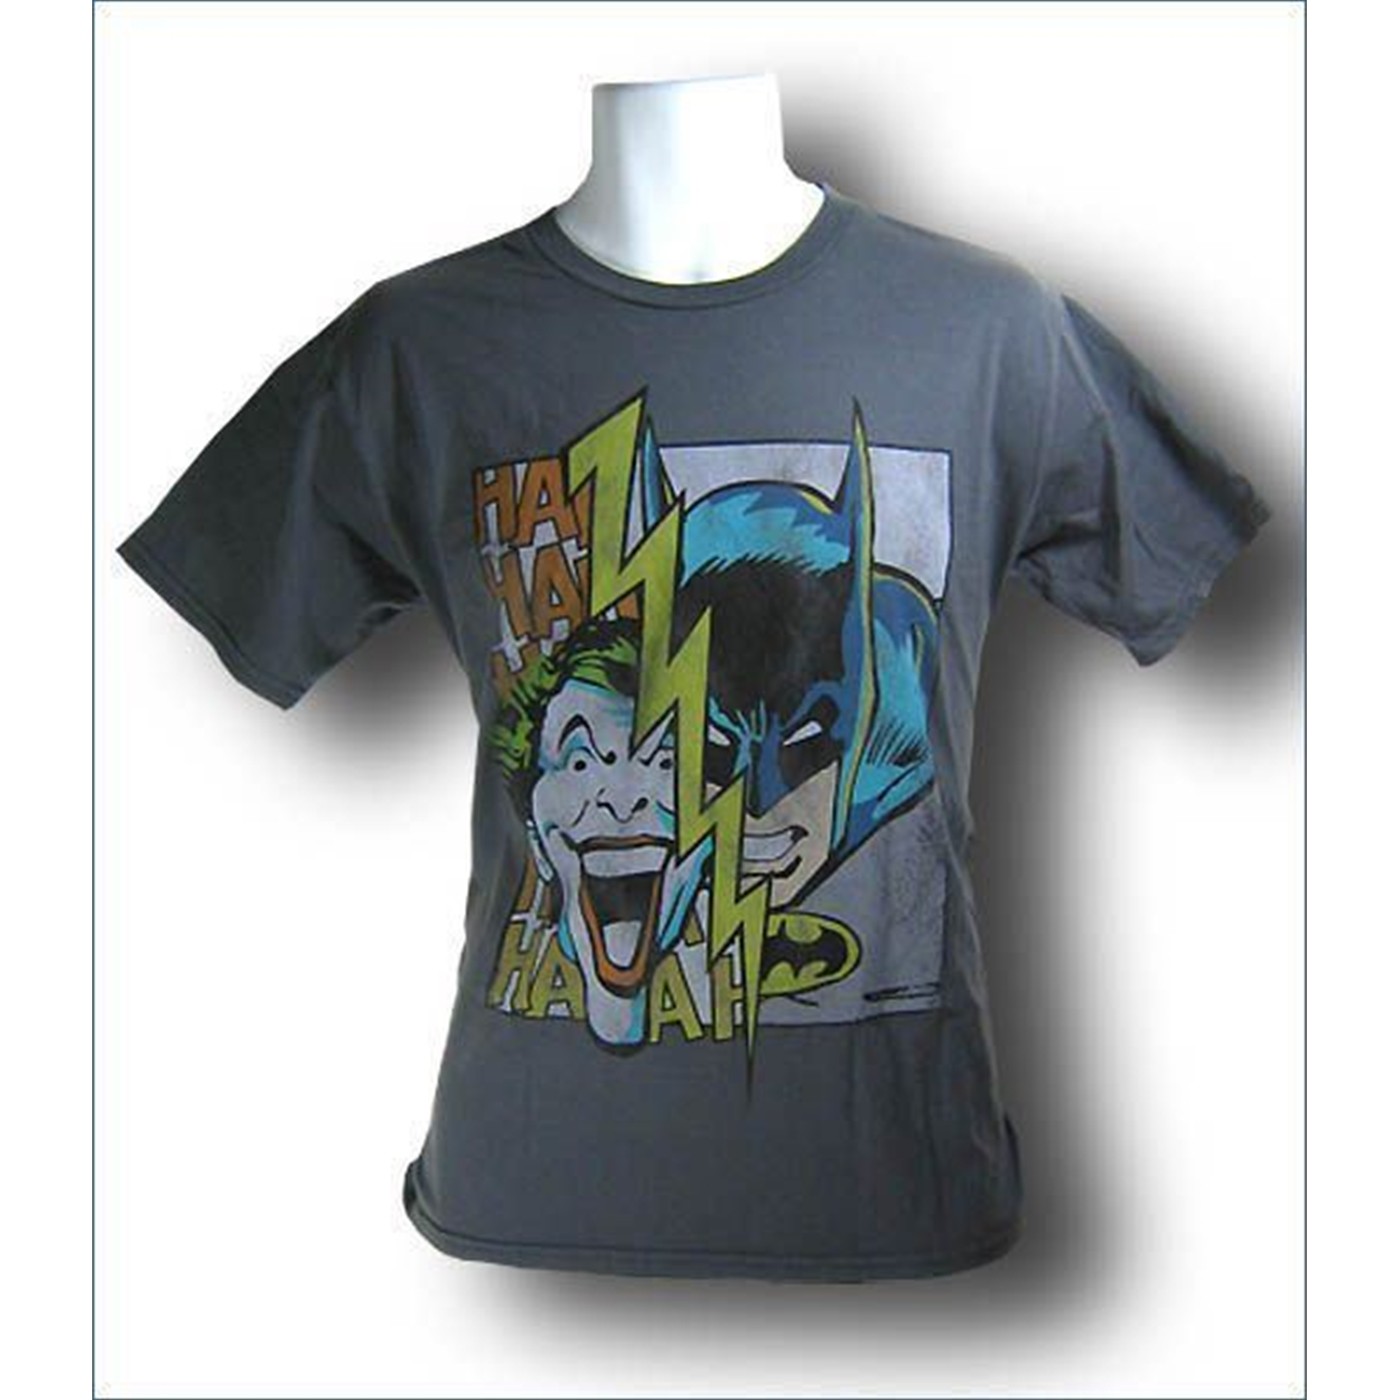 Batman & Joker Steel Grey T-Shirt by Junk Food